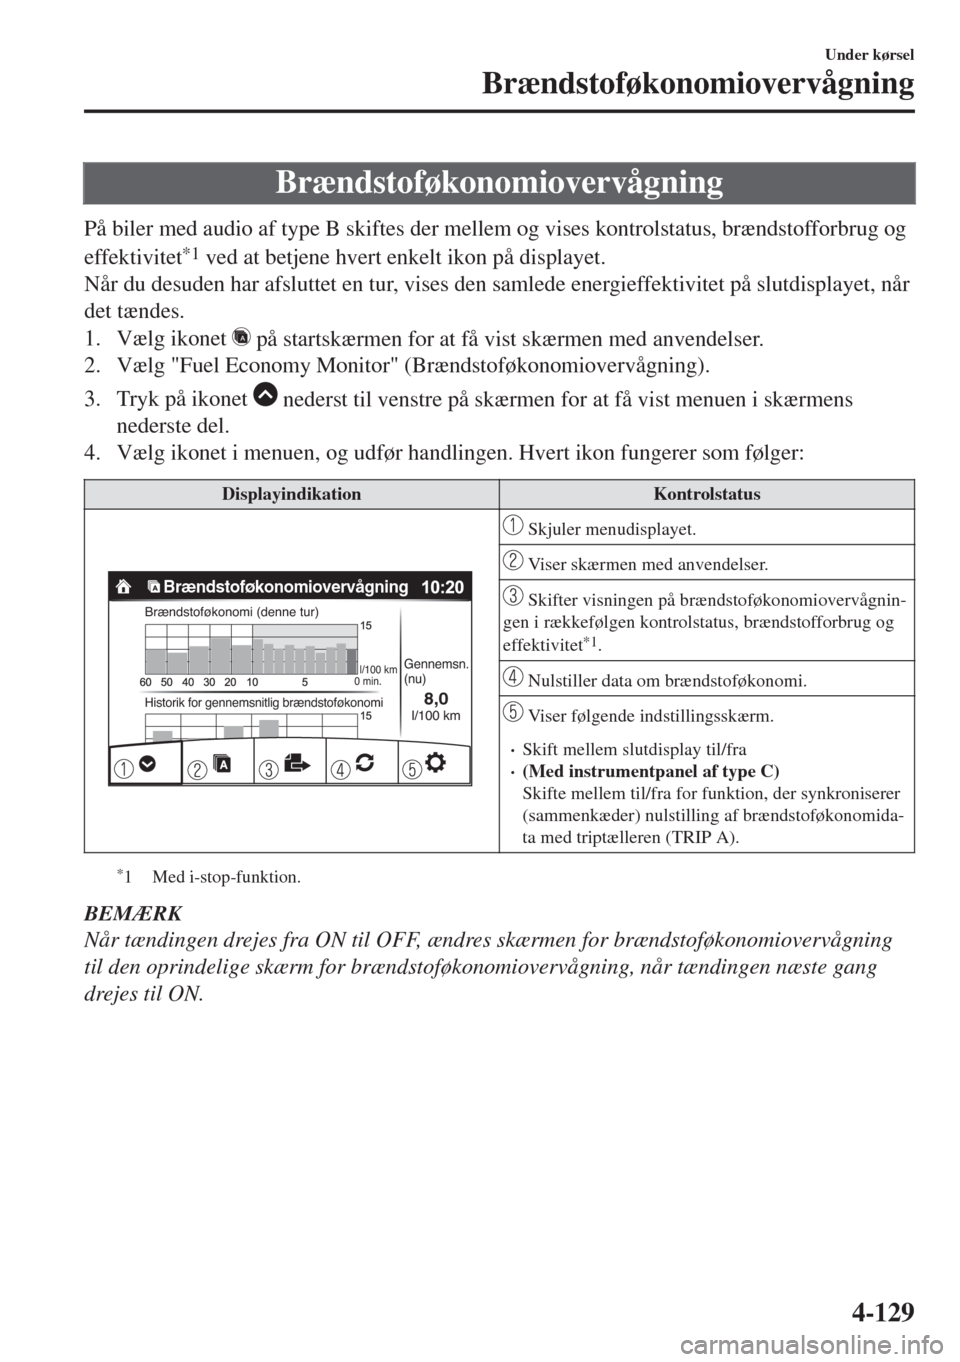 MAZDA MODEL 6 2018  Instruktionsbog (in Danish) Brændstoføkonomiovervågning
På biler med audio af type B skiftes der mellem og vises kontrolstatus, brændstofforbrug og
effektivitet
*1 ved at betjene hvert enkelt ikon på displayet.
Når du des